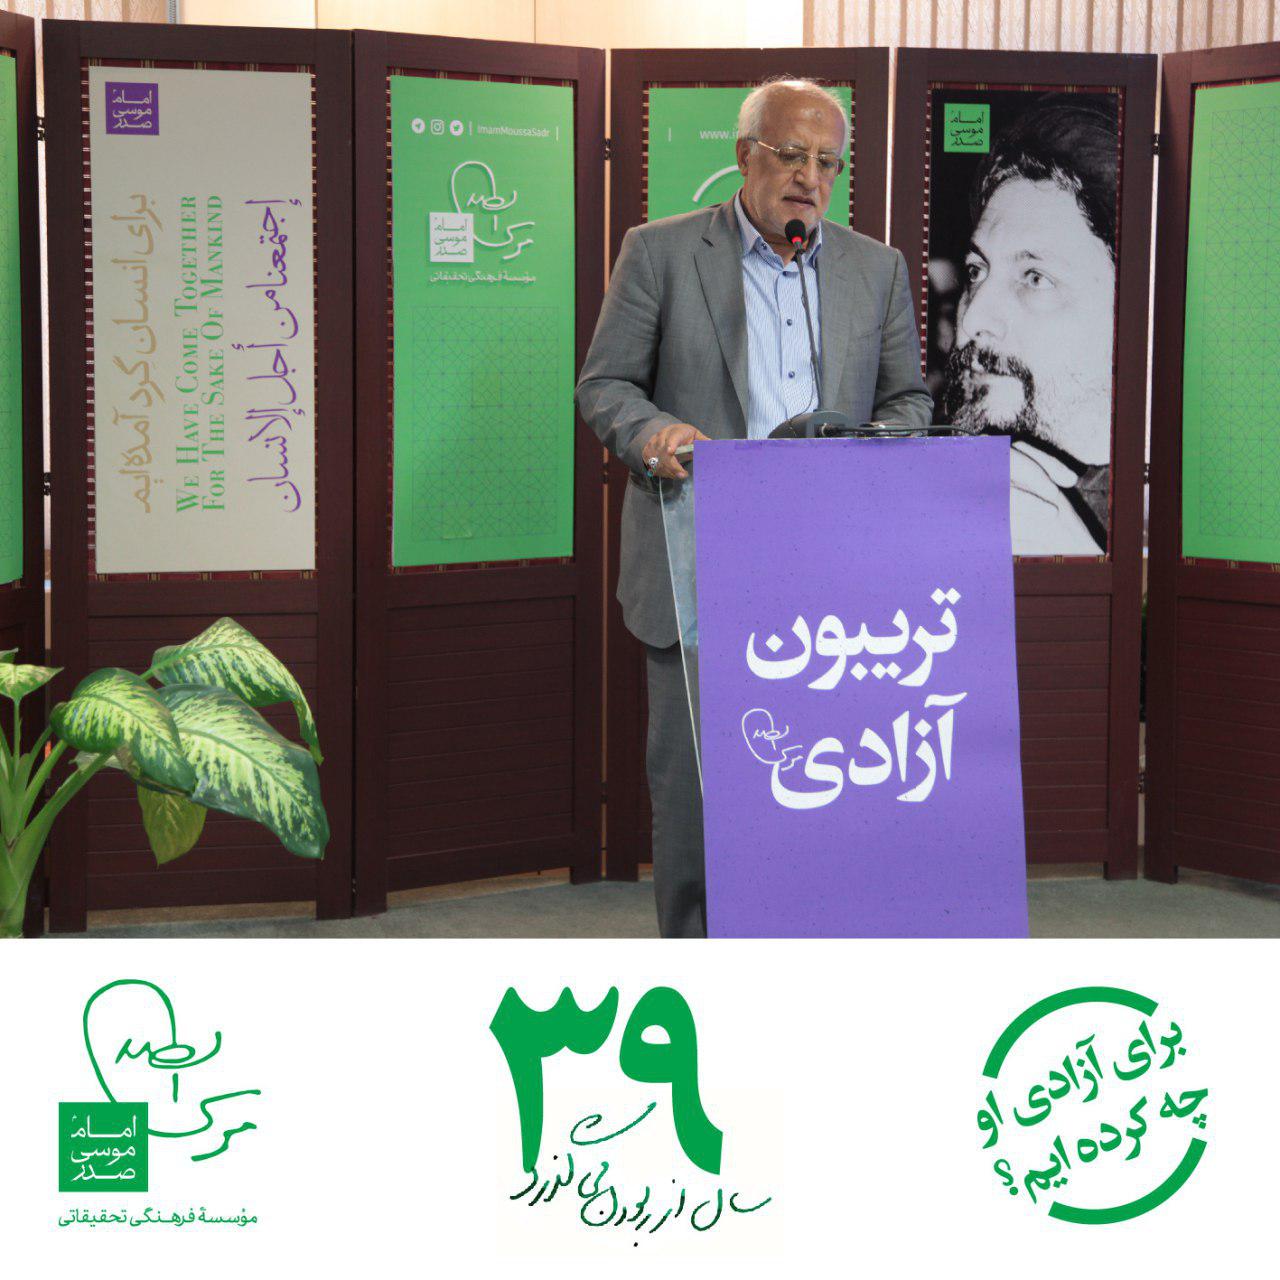 علی اکبر اشعری، رئیس اسبق سازمان اسناد و کتابخانه ملی ایران